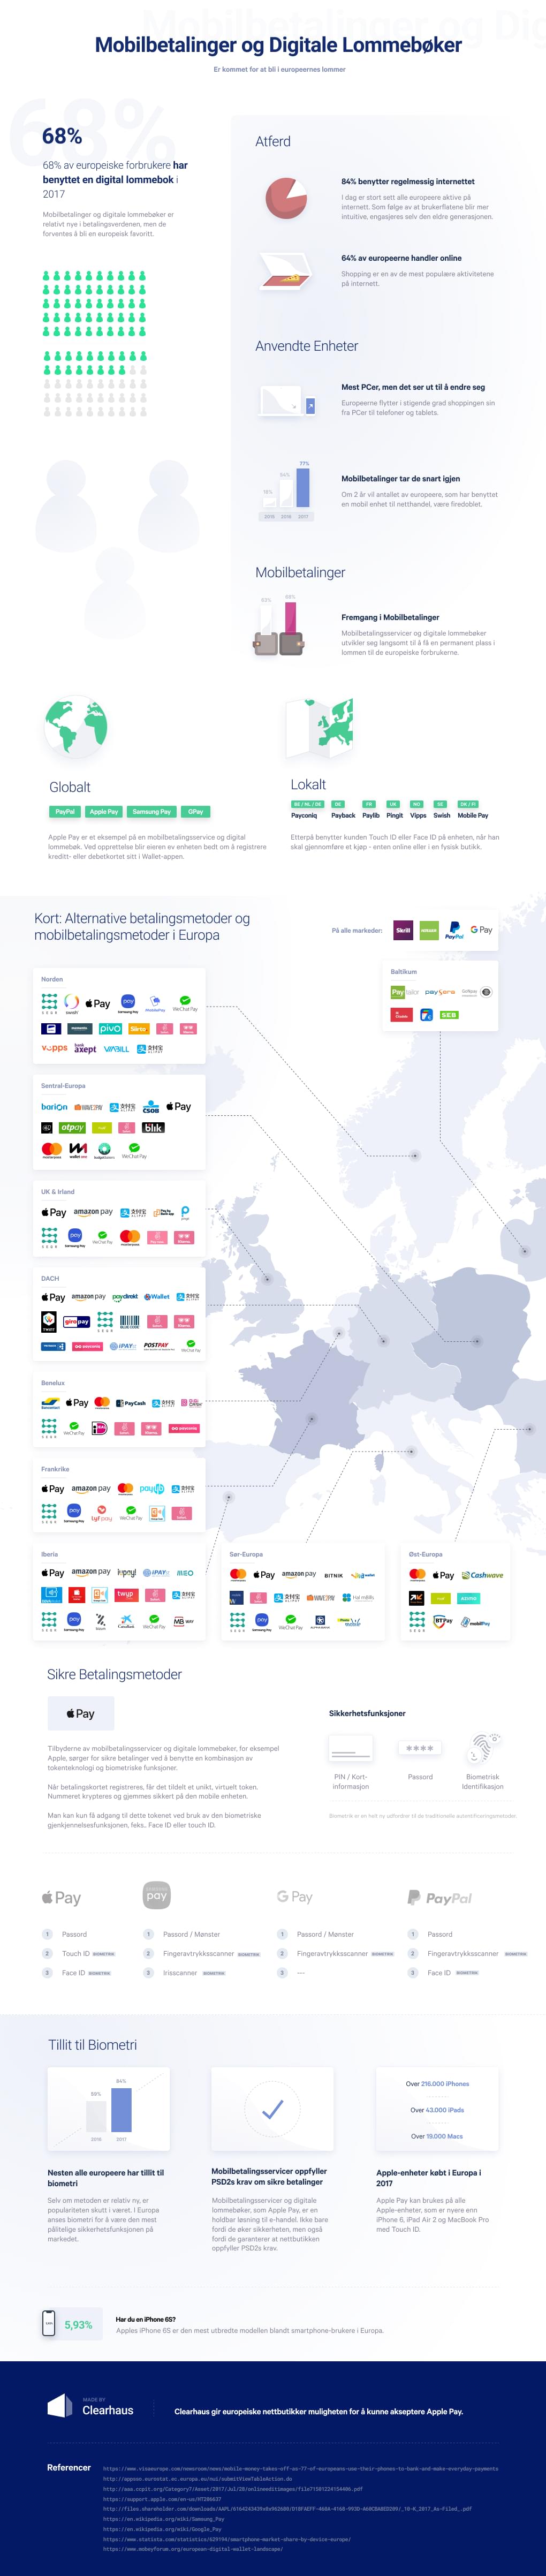 Mobilbetalinger og Digitale Lommebøker i Europa. Her er en statistikk og oversikt over hvilke tjenester som blir benyttet.